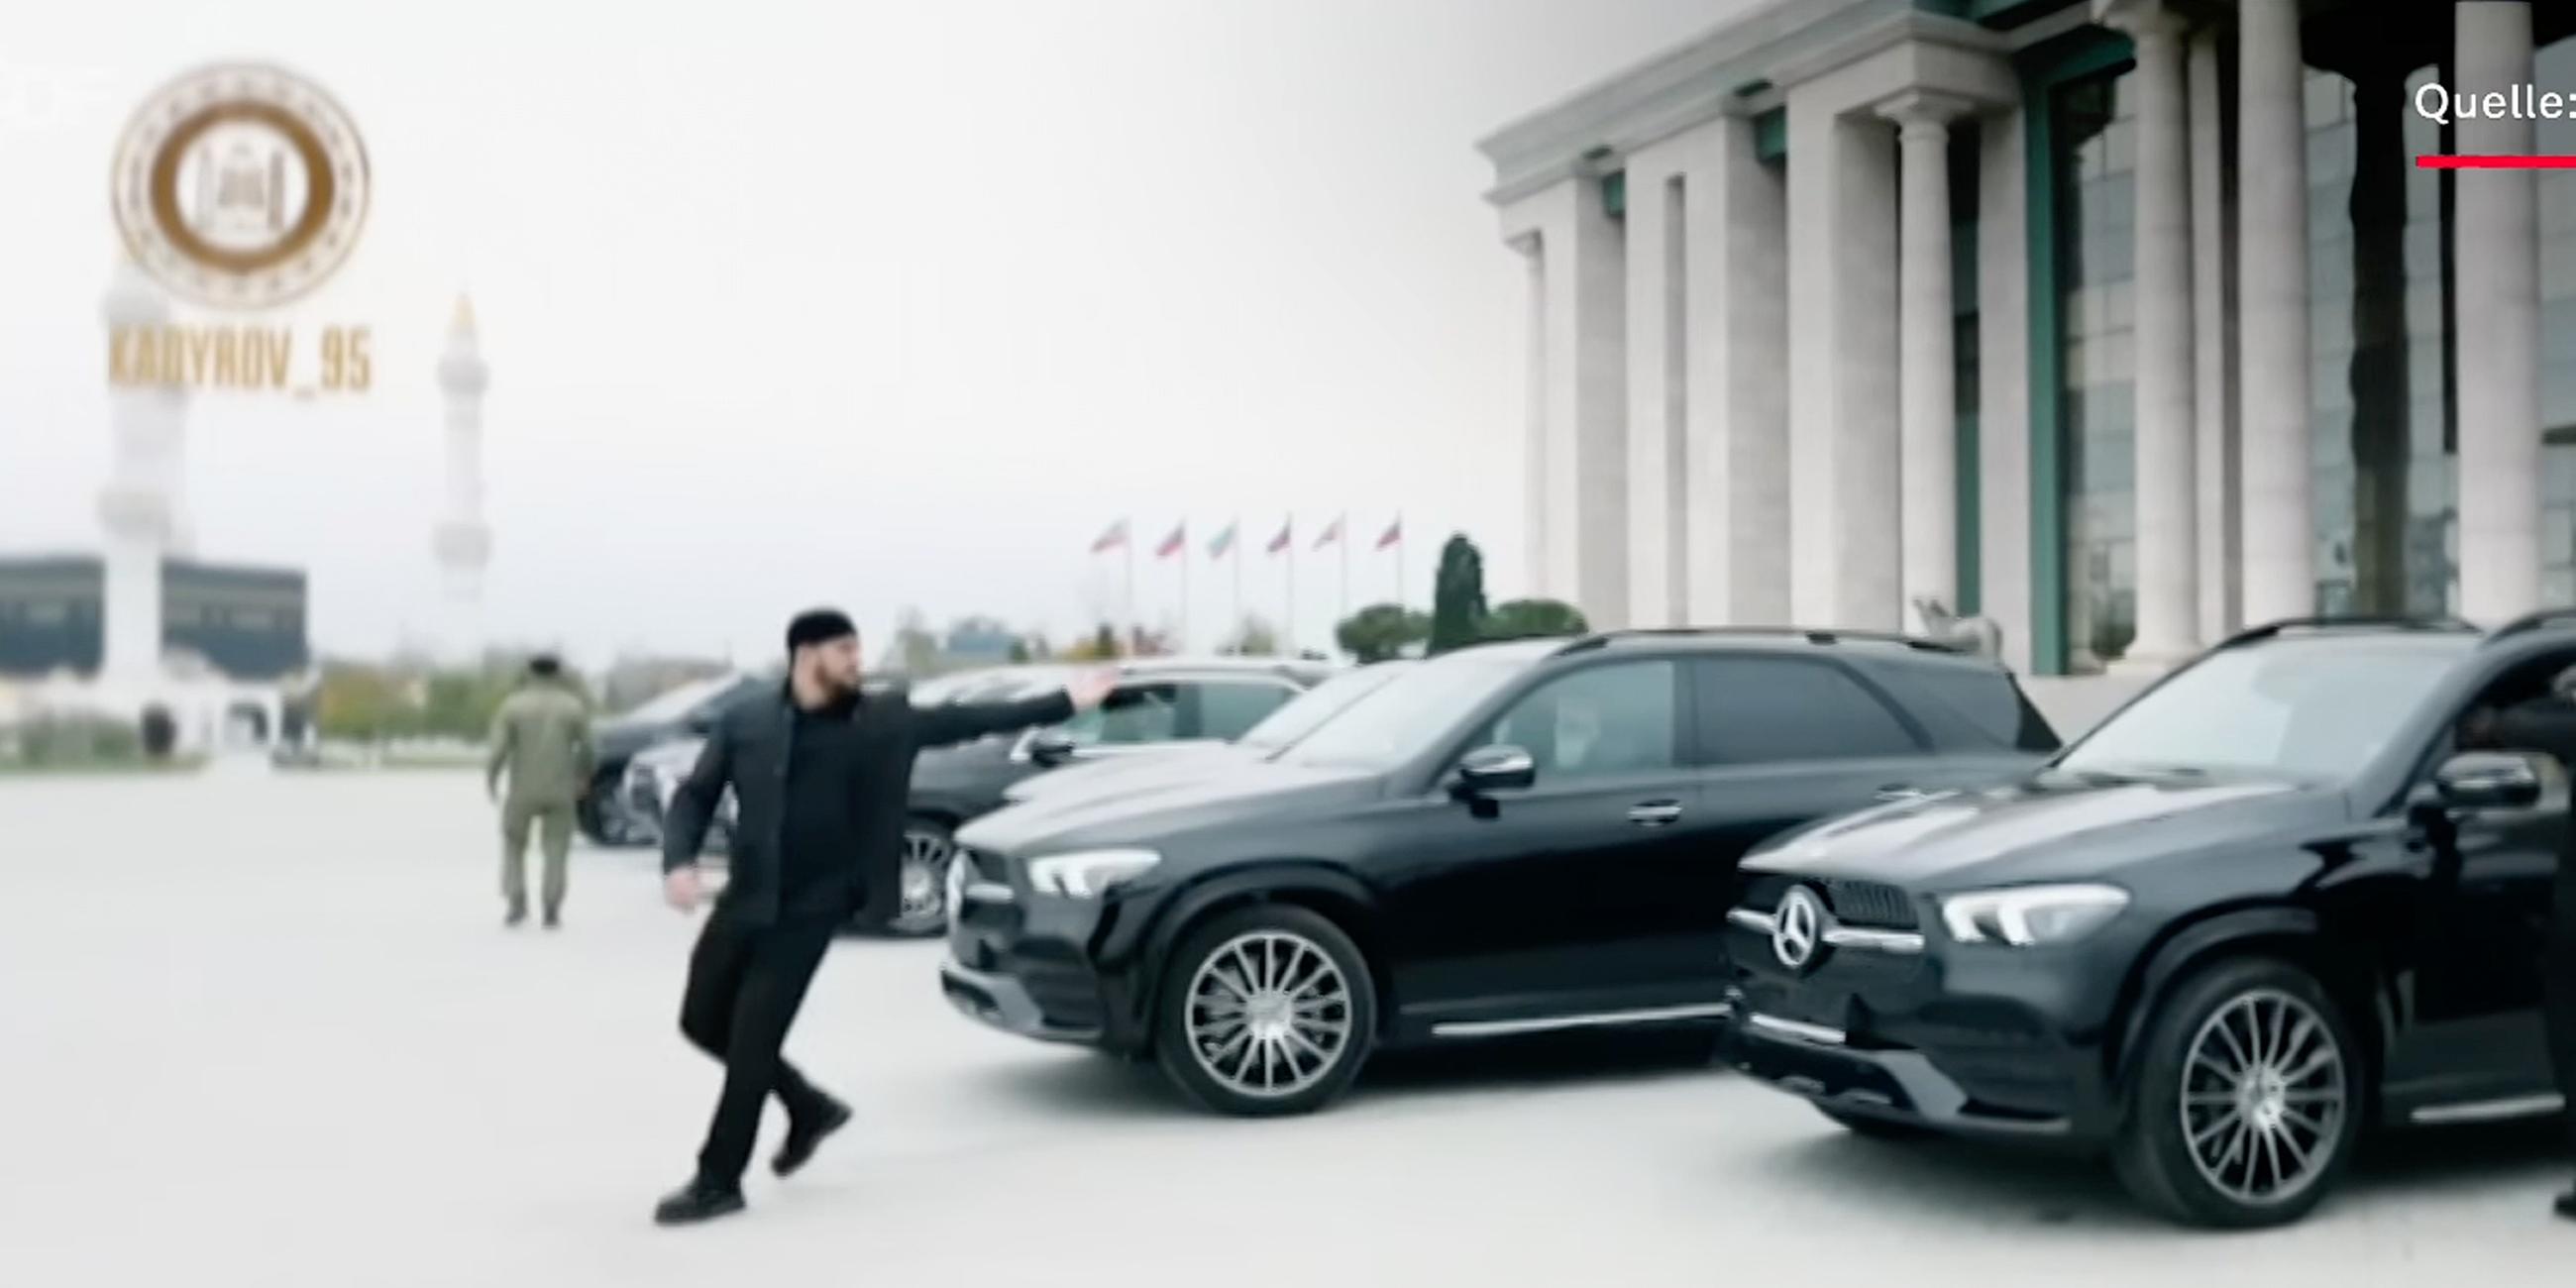 Screenshot aus dem Video "Auto-Schmugglern auf der Spur"